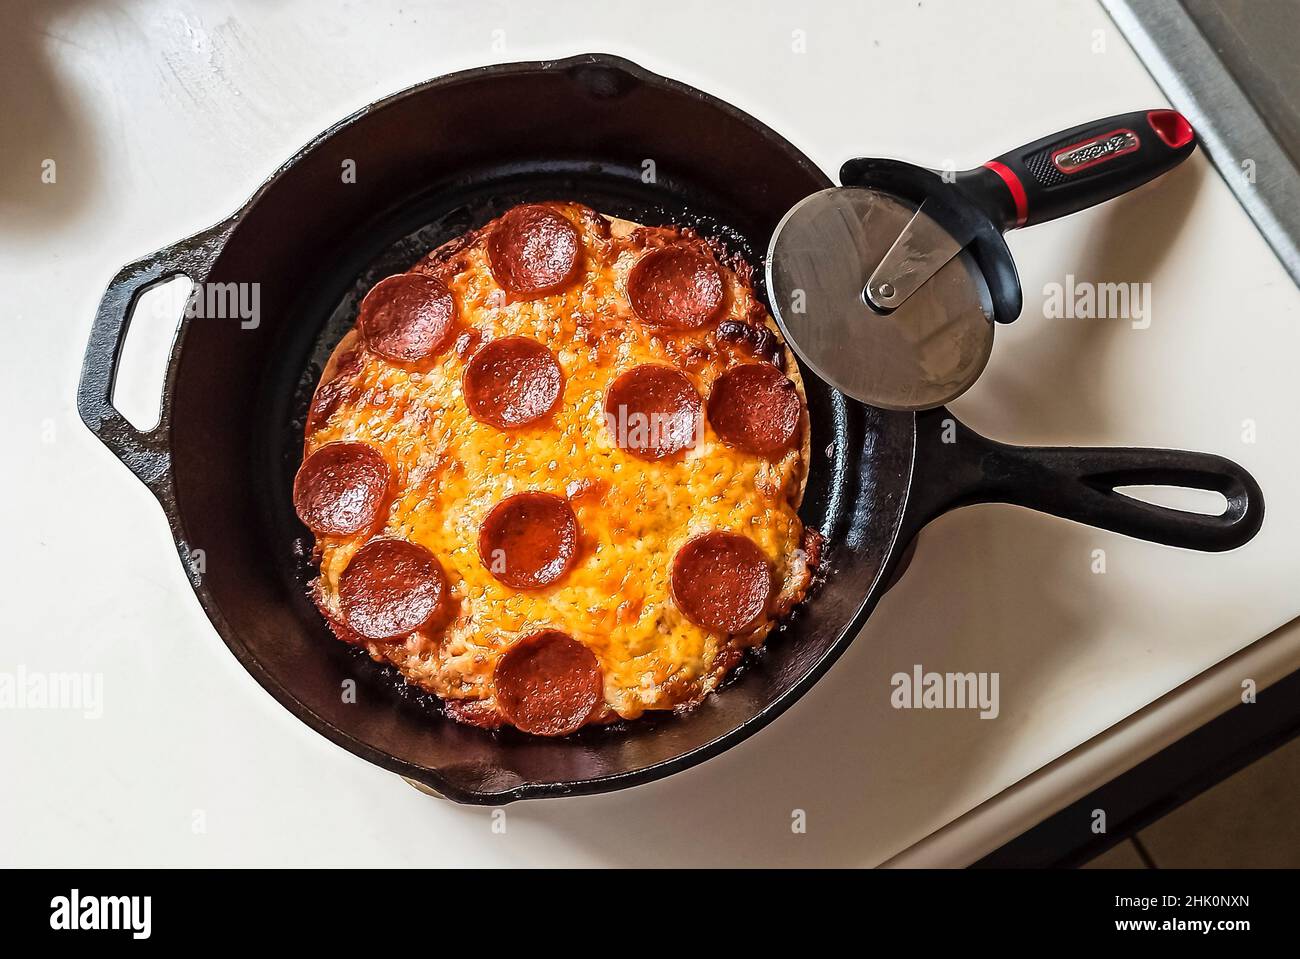 Pizza casera con queso mozzarela y pepperoni. Foto de stock